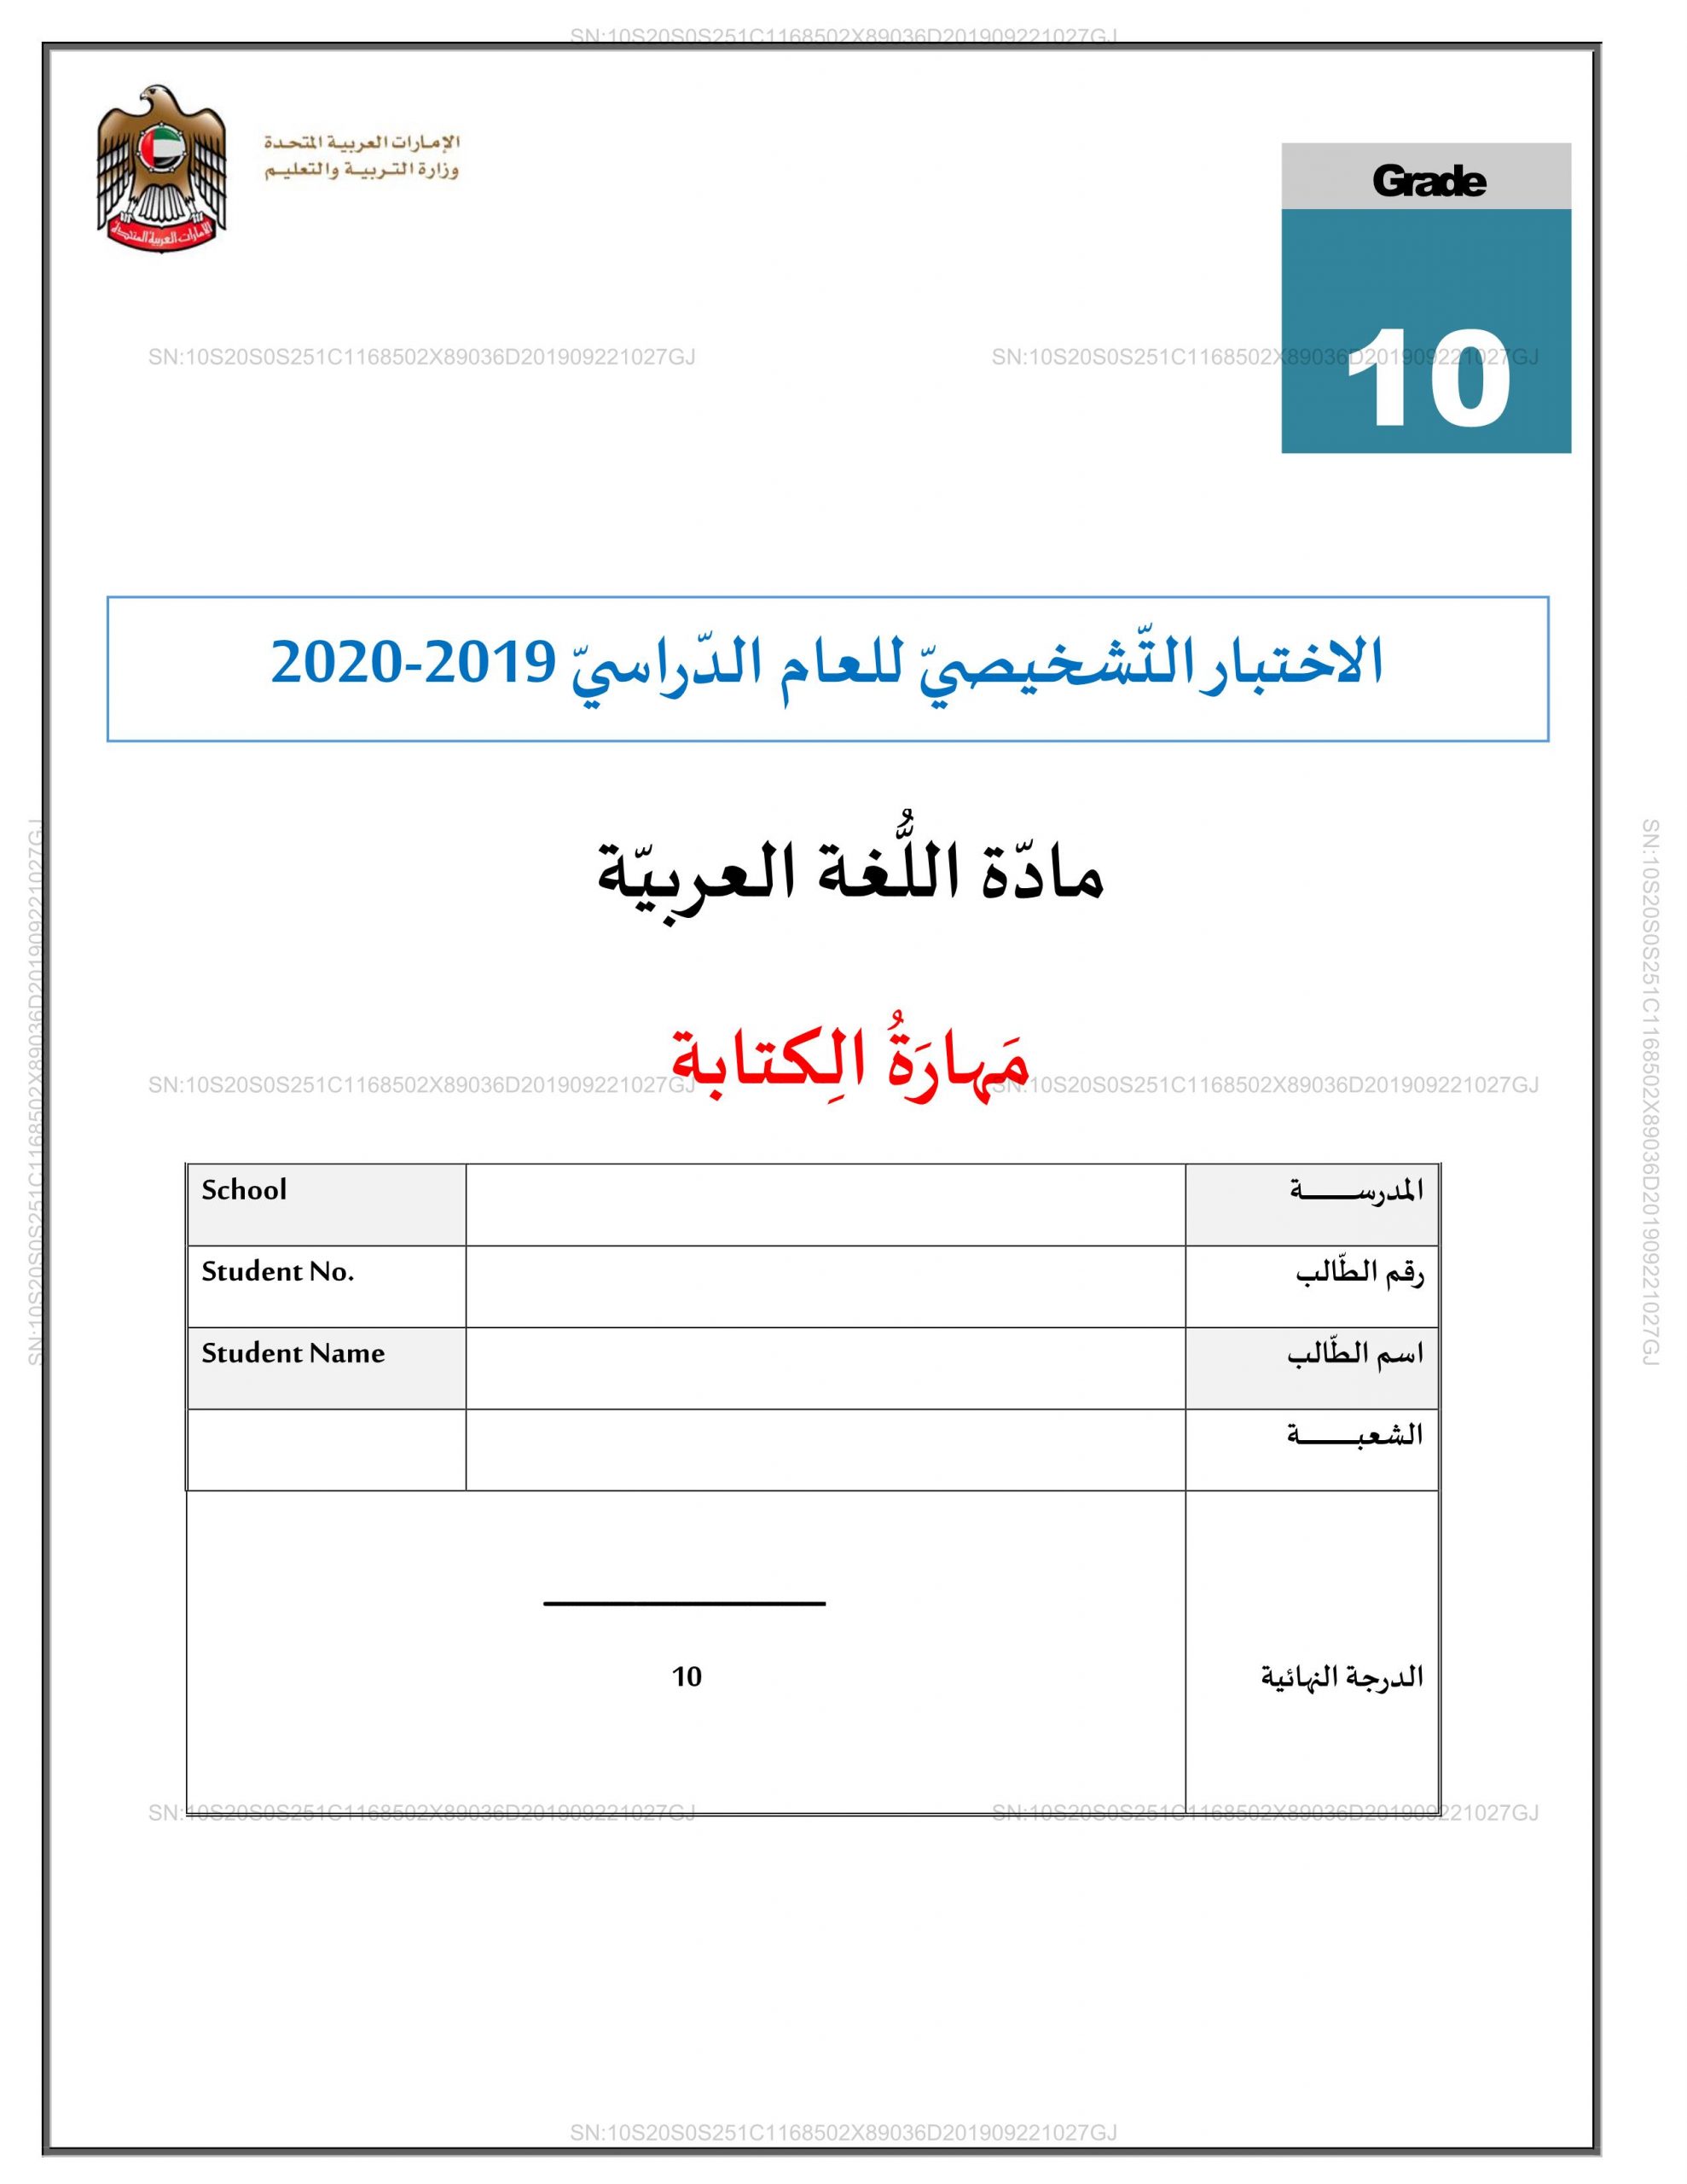 الاختبار التشخيصي مهارة الكتابة للصف العاشر مادة اللغة العربية